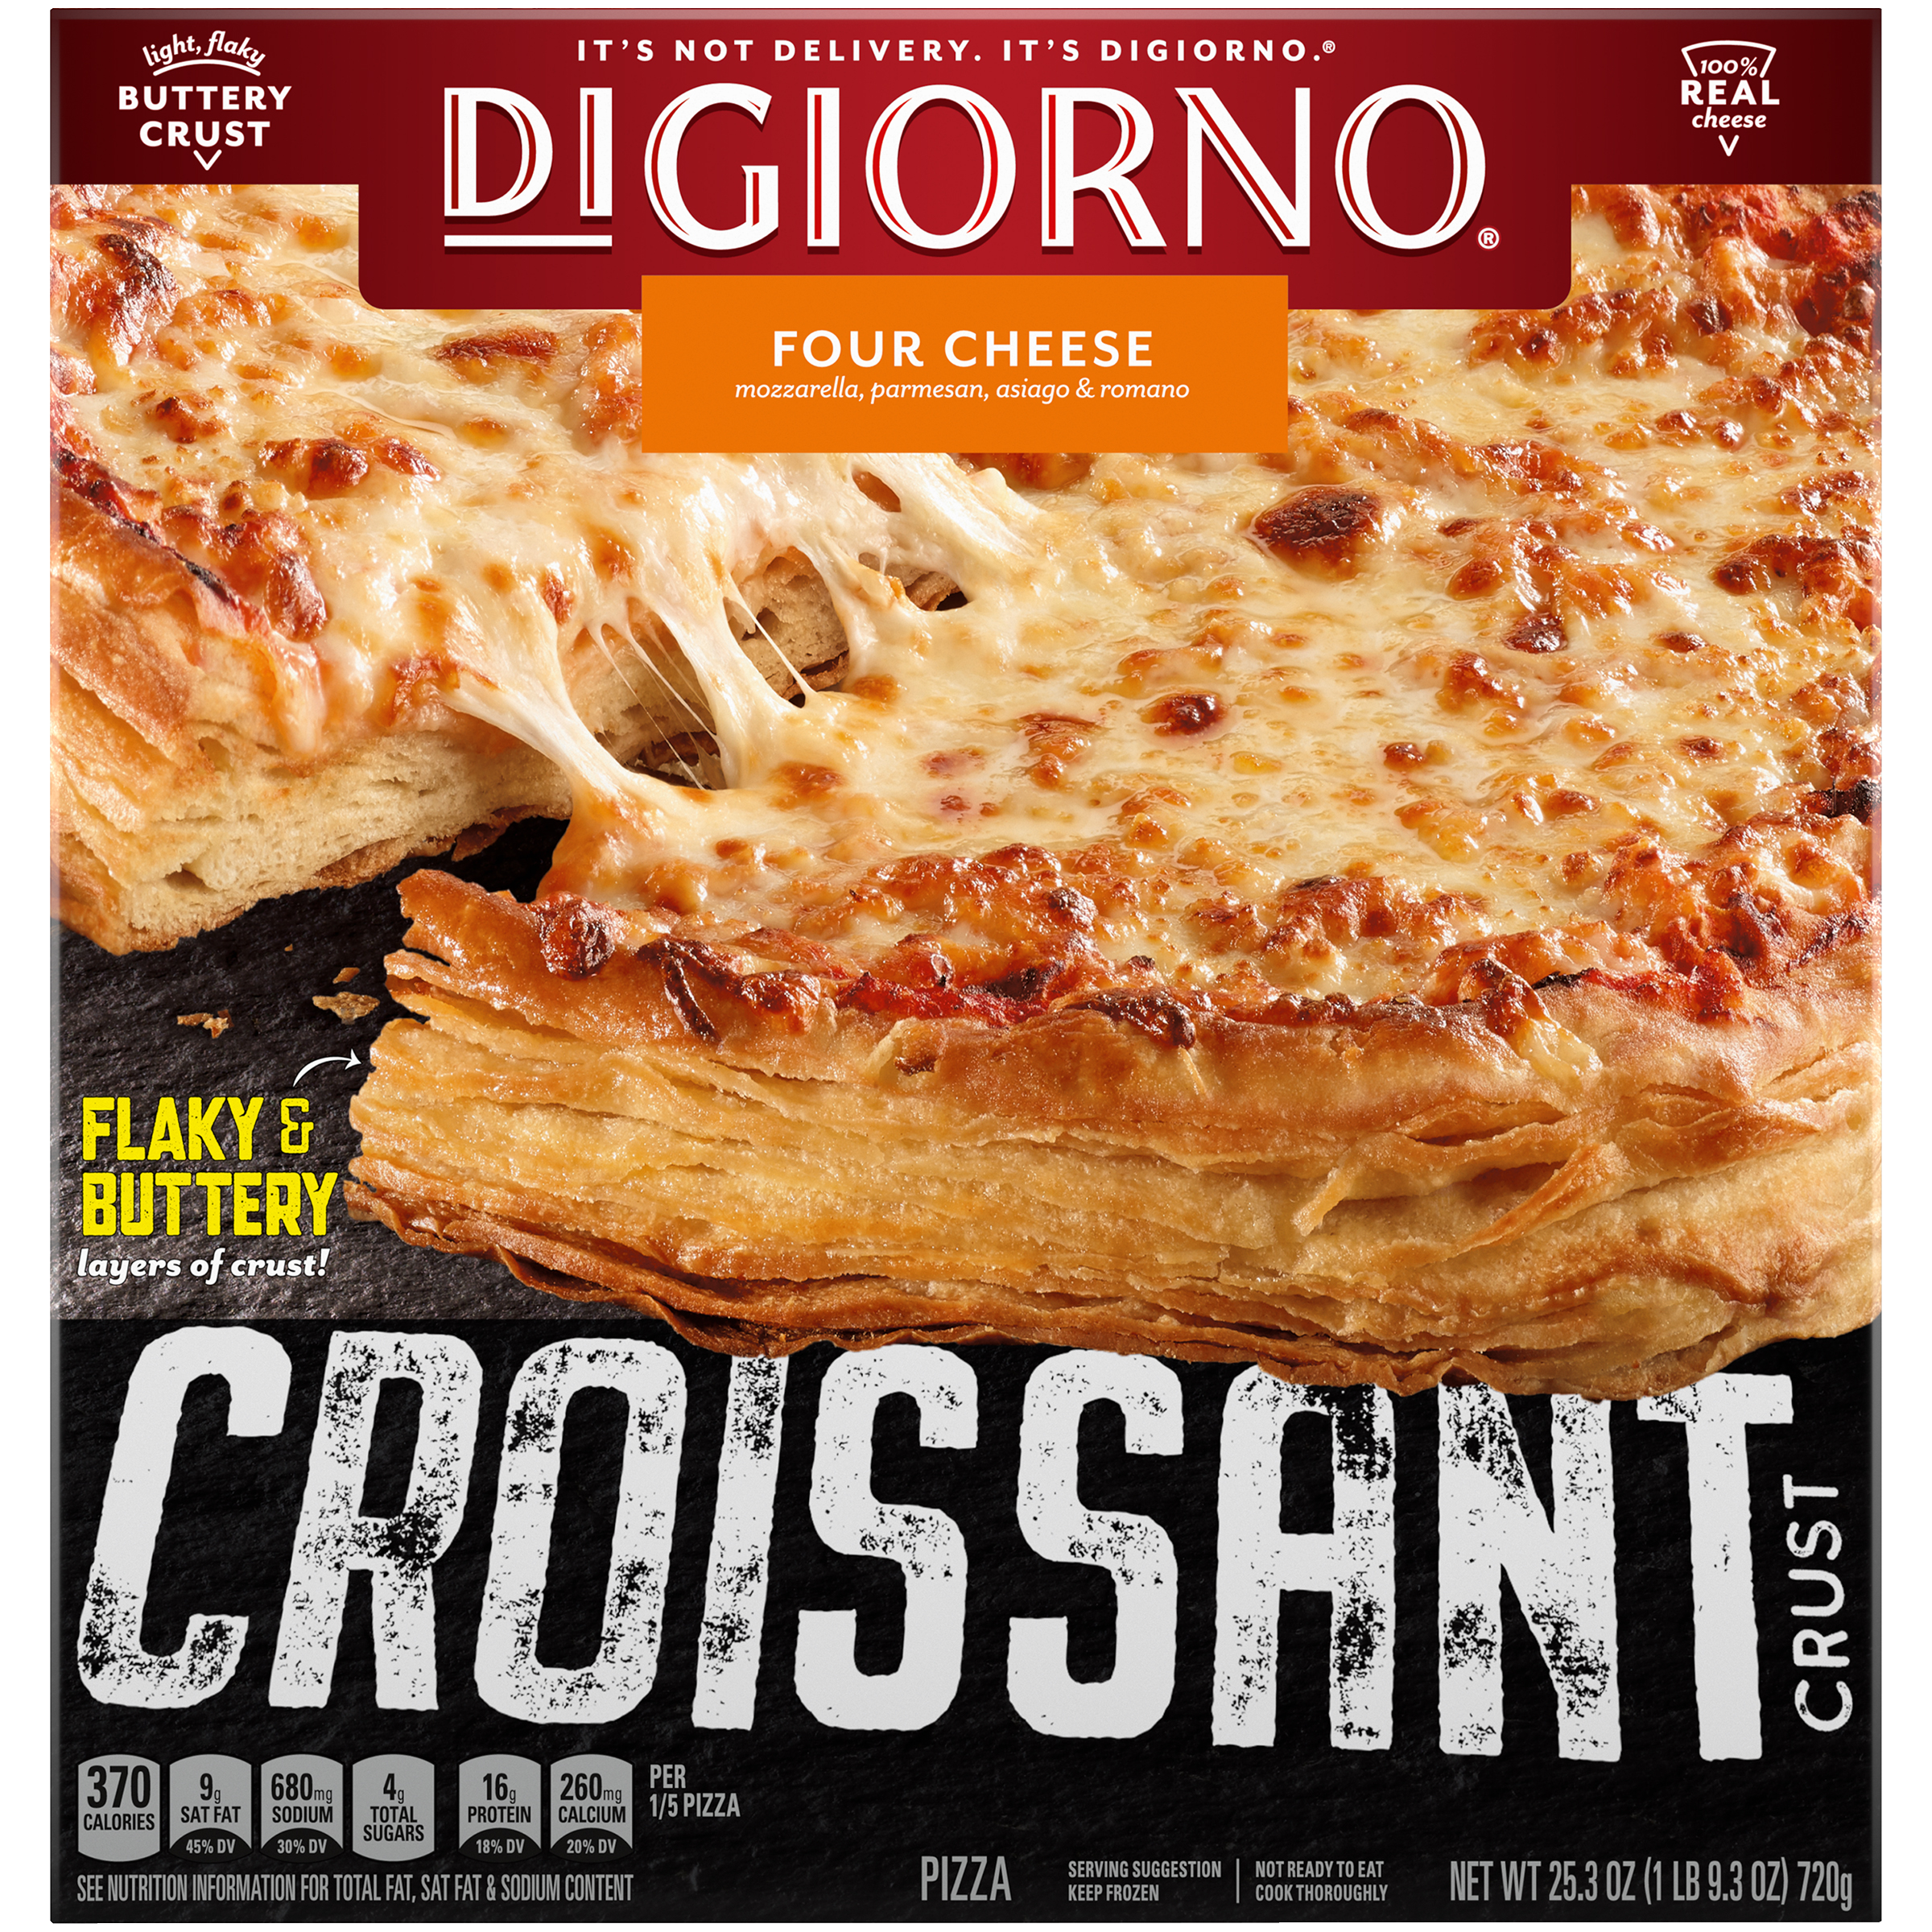 DIGIORNO Croissant Crust Four Cheese Pizza 12 units per case 25.3 oz